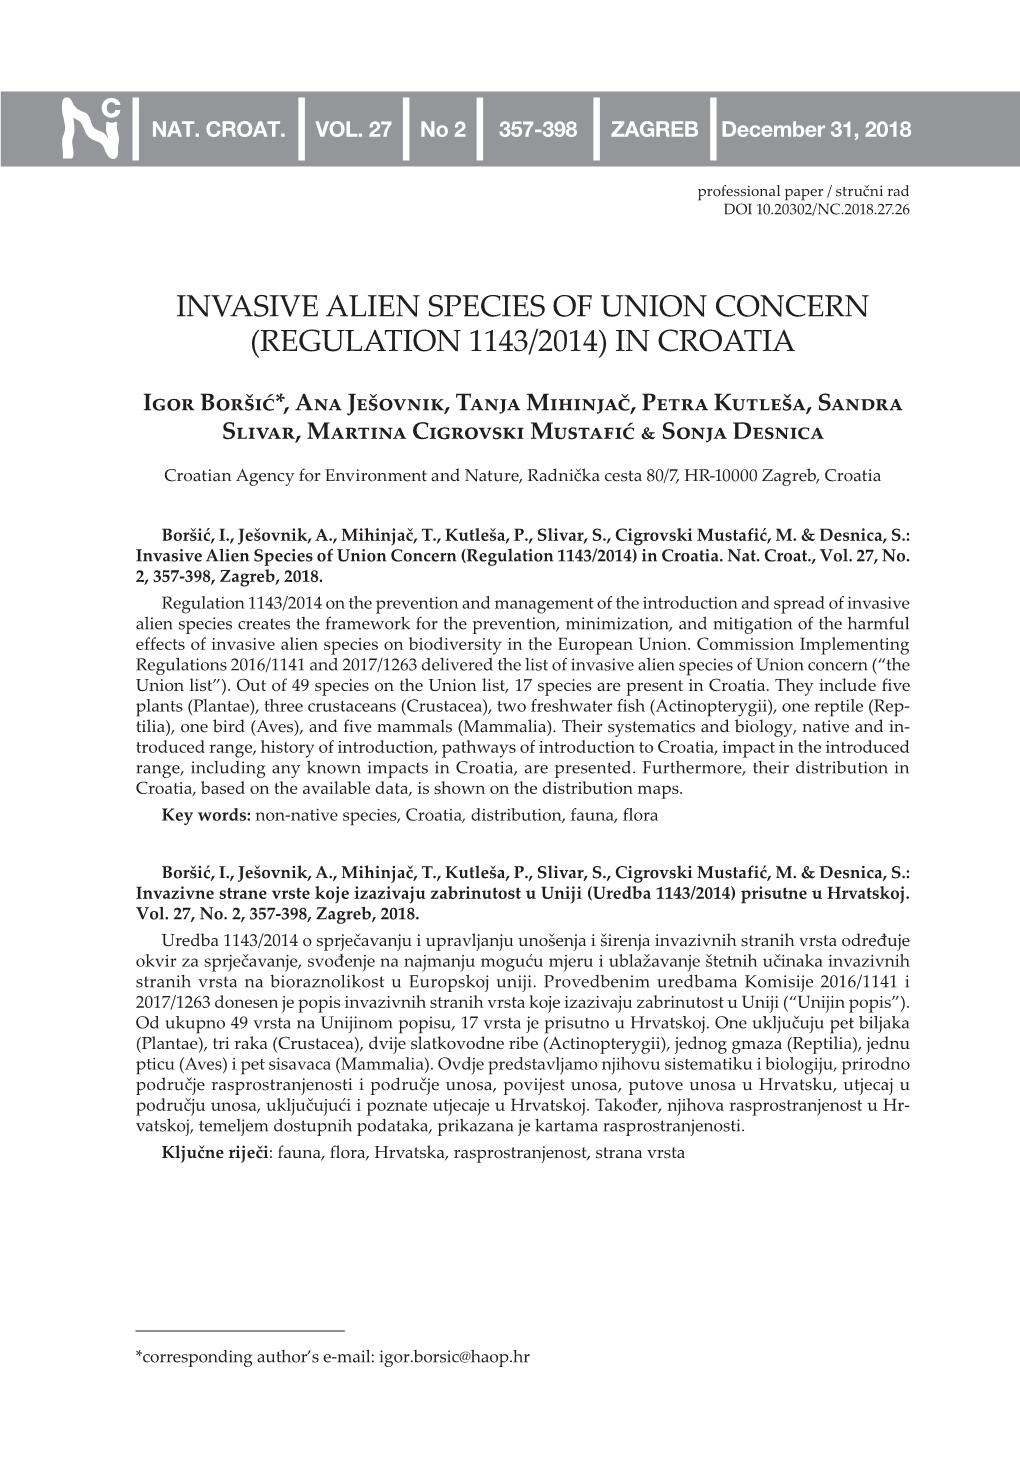 Invasive Alien Species of Union Concern (Regulation 1143/2014) in Croatia